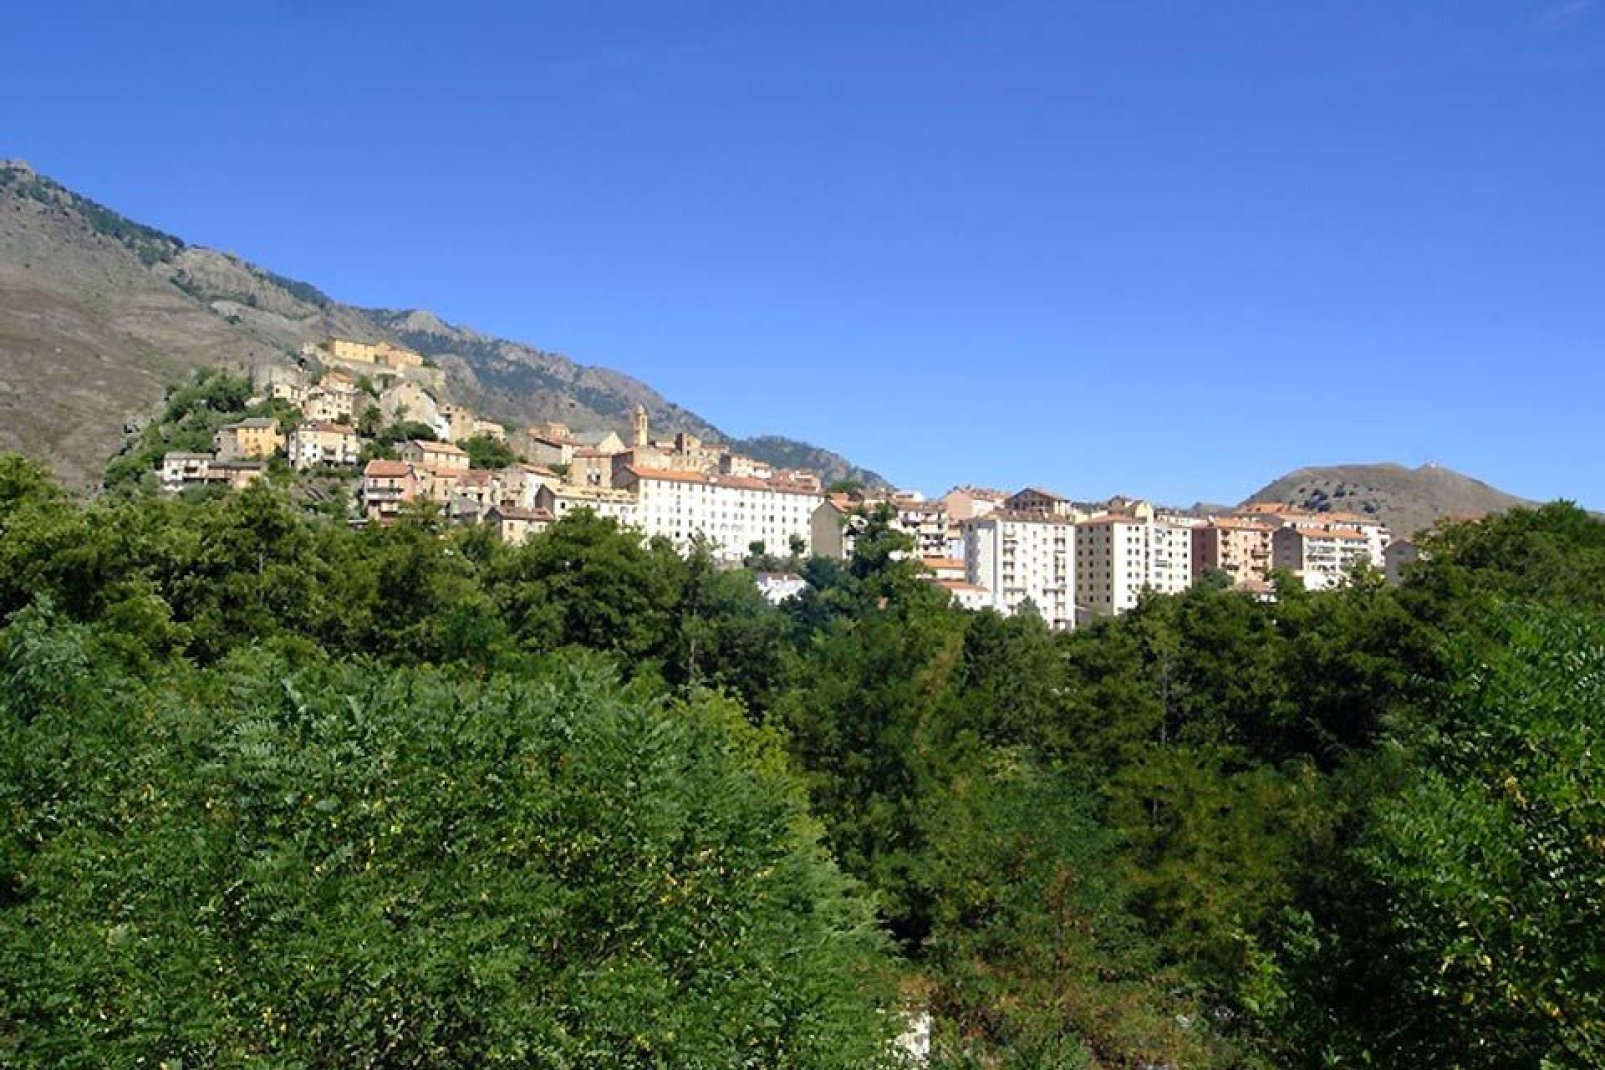 Corte si trova nella Corsica centrale a 450 metri di altitudine, tra Bastia e Ajaccio.